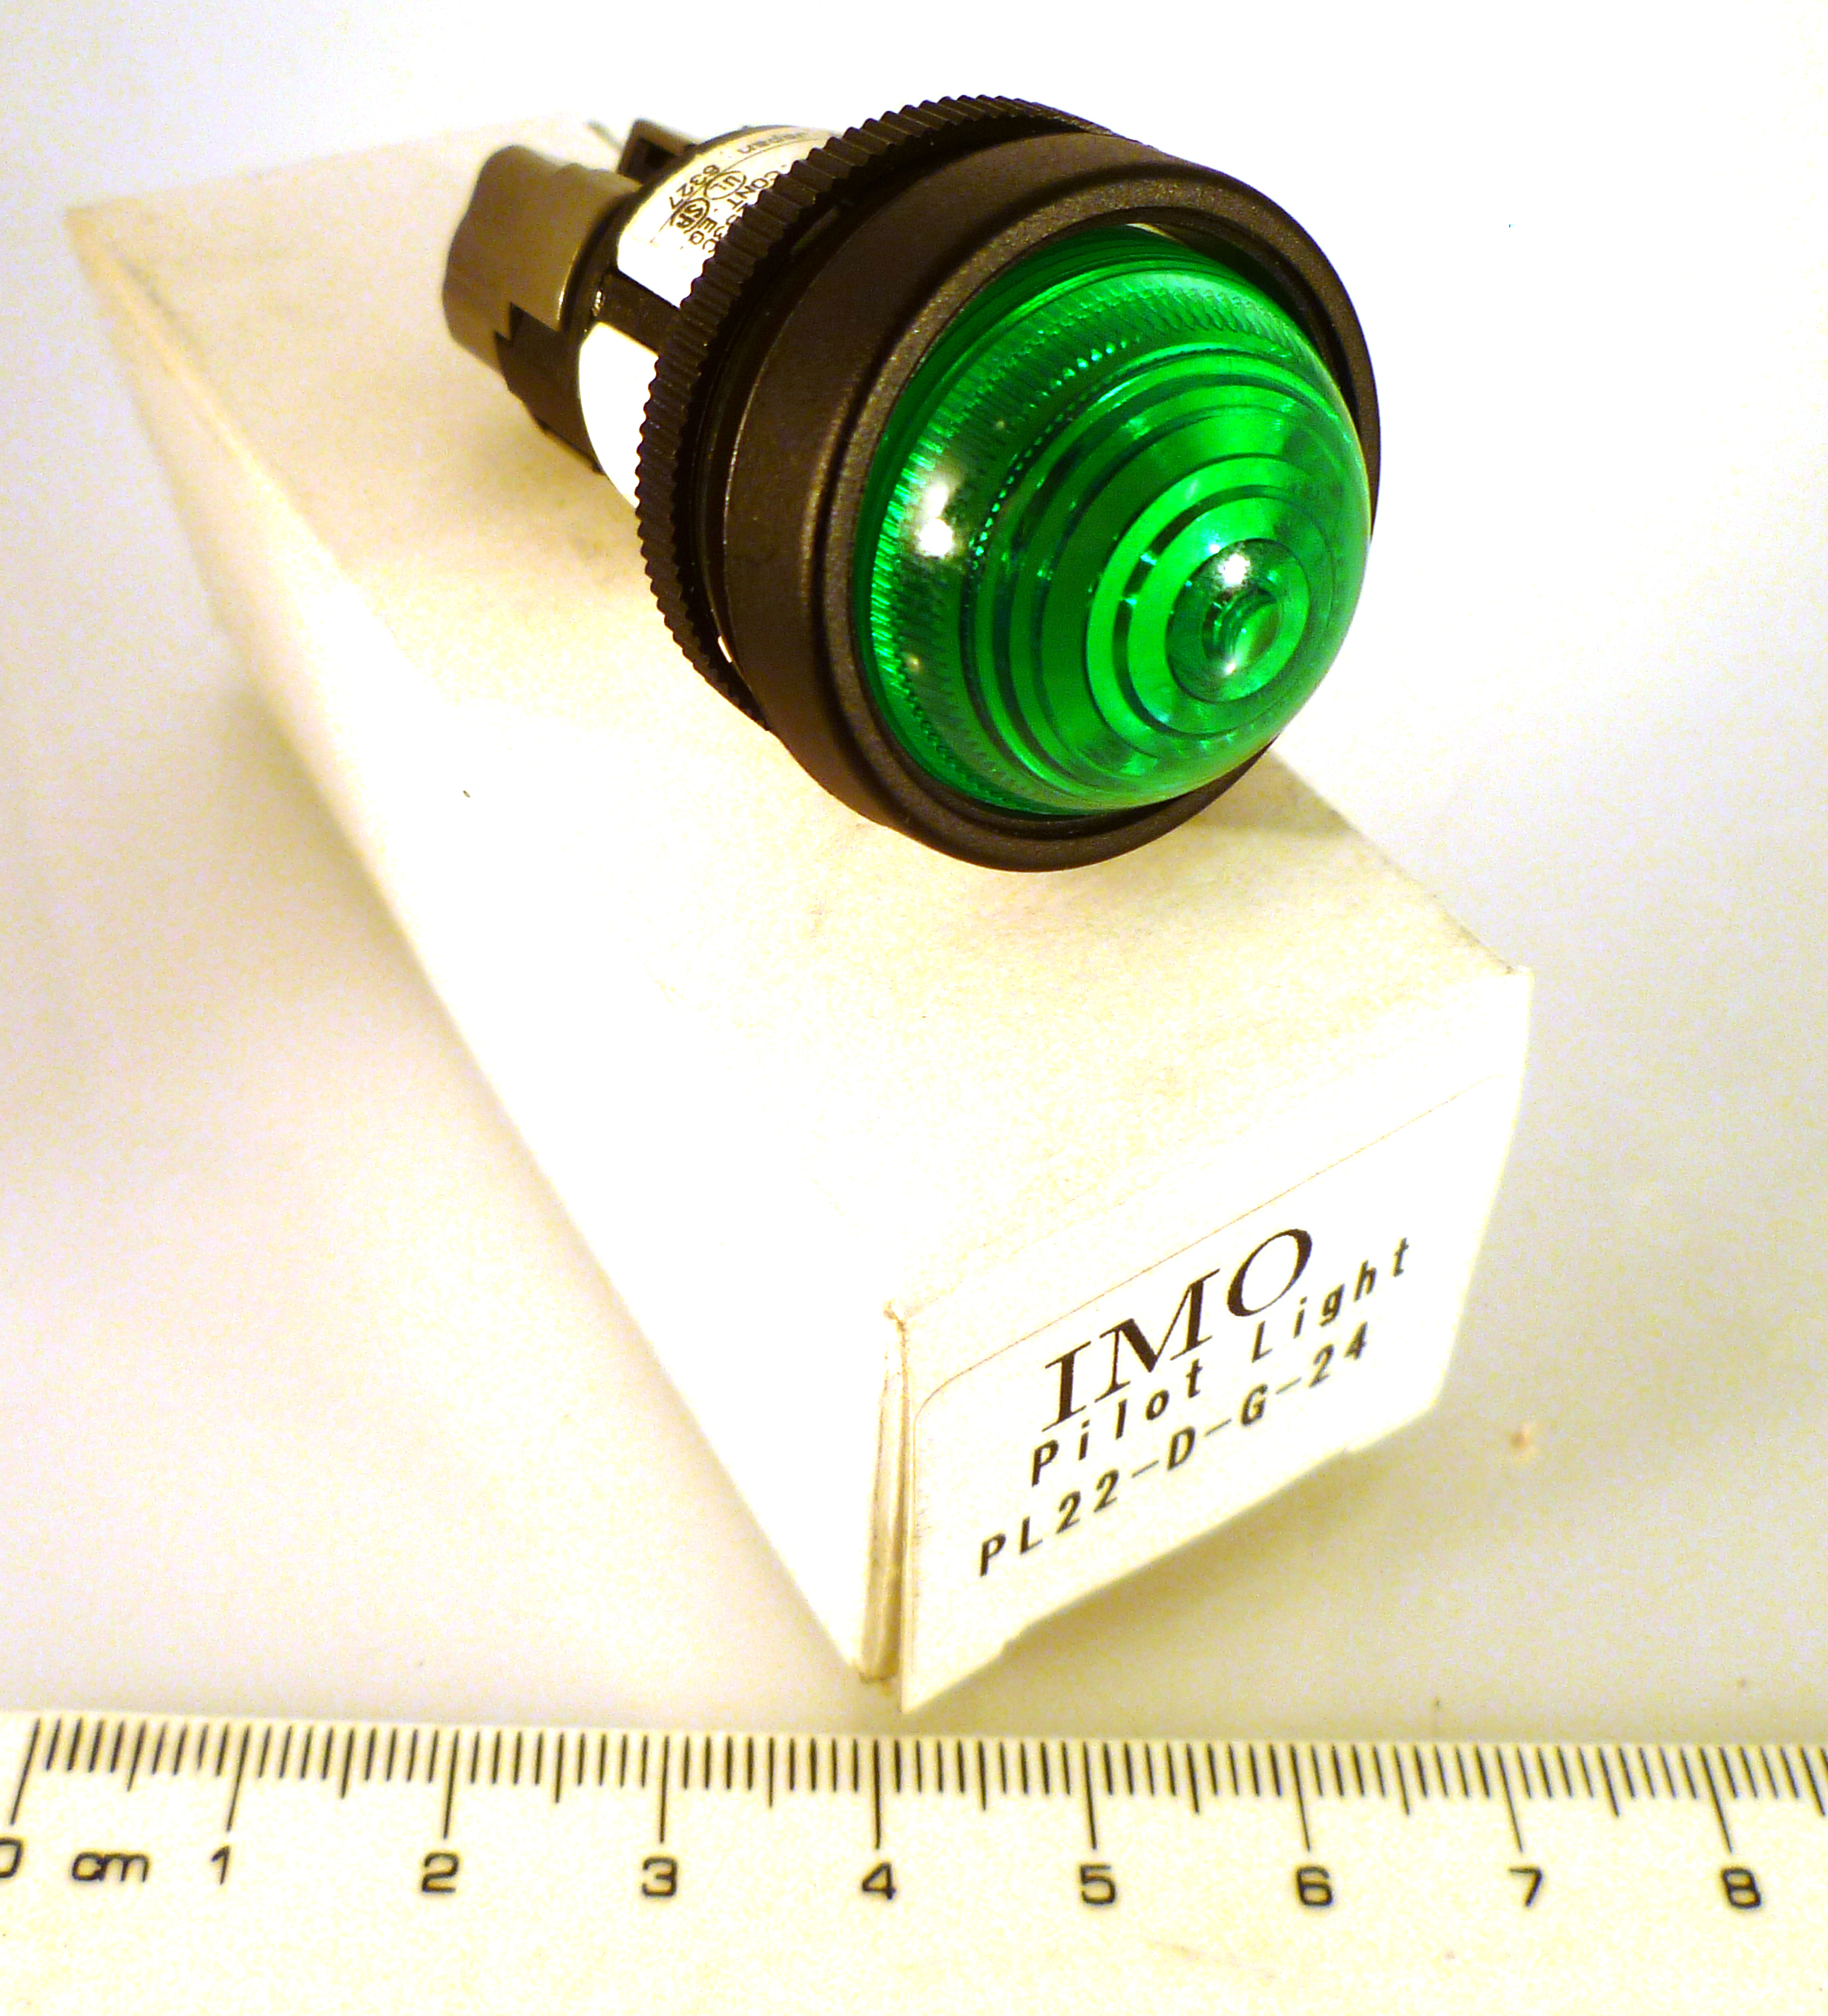 IMO PL22-D-G-24 Green Pilot Light 6-30V 1W (22mm) MBC009c